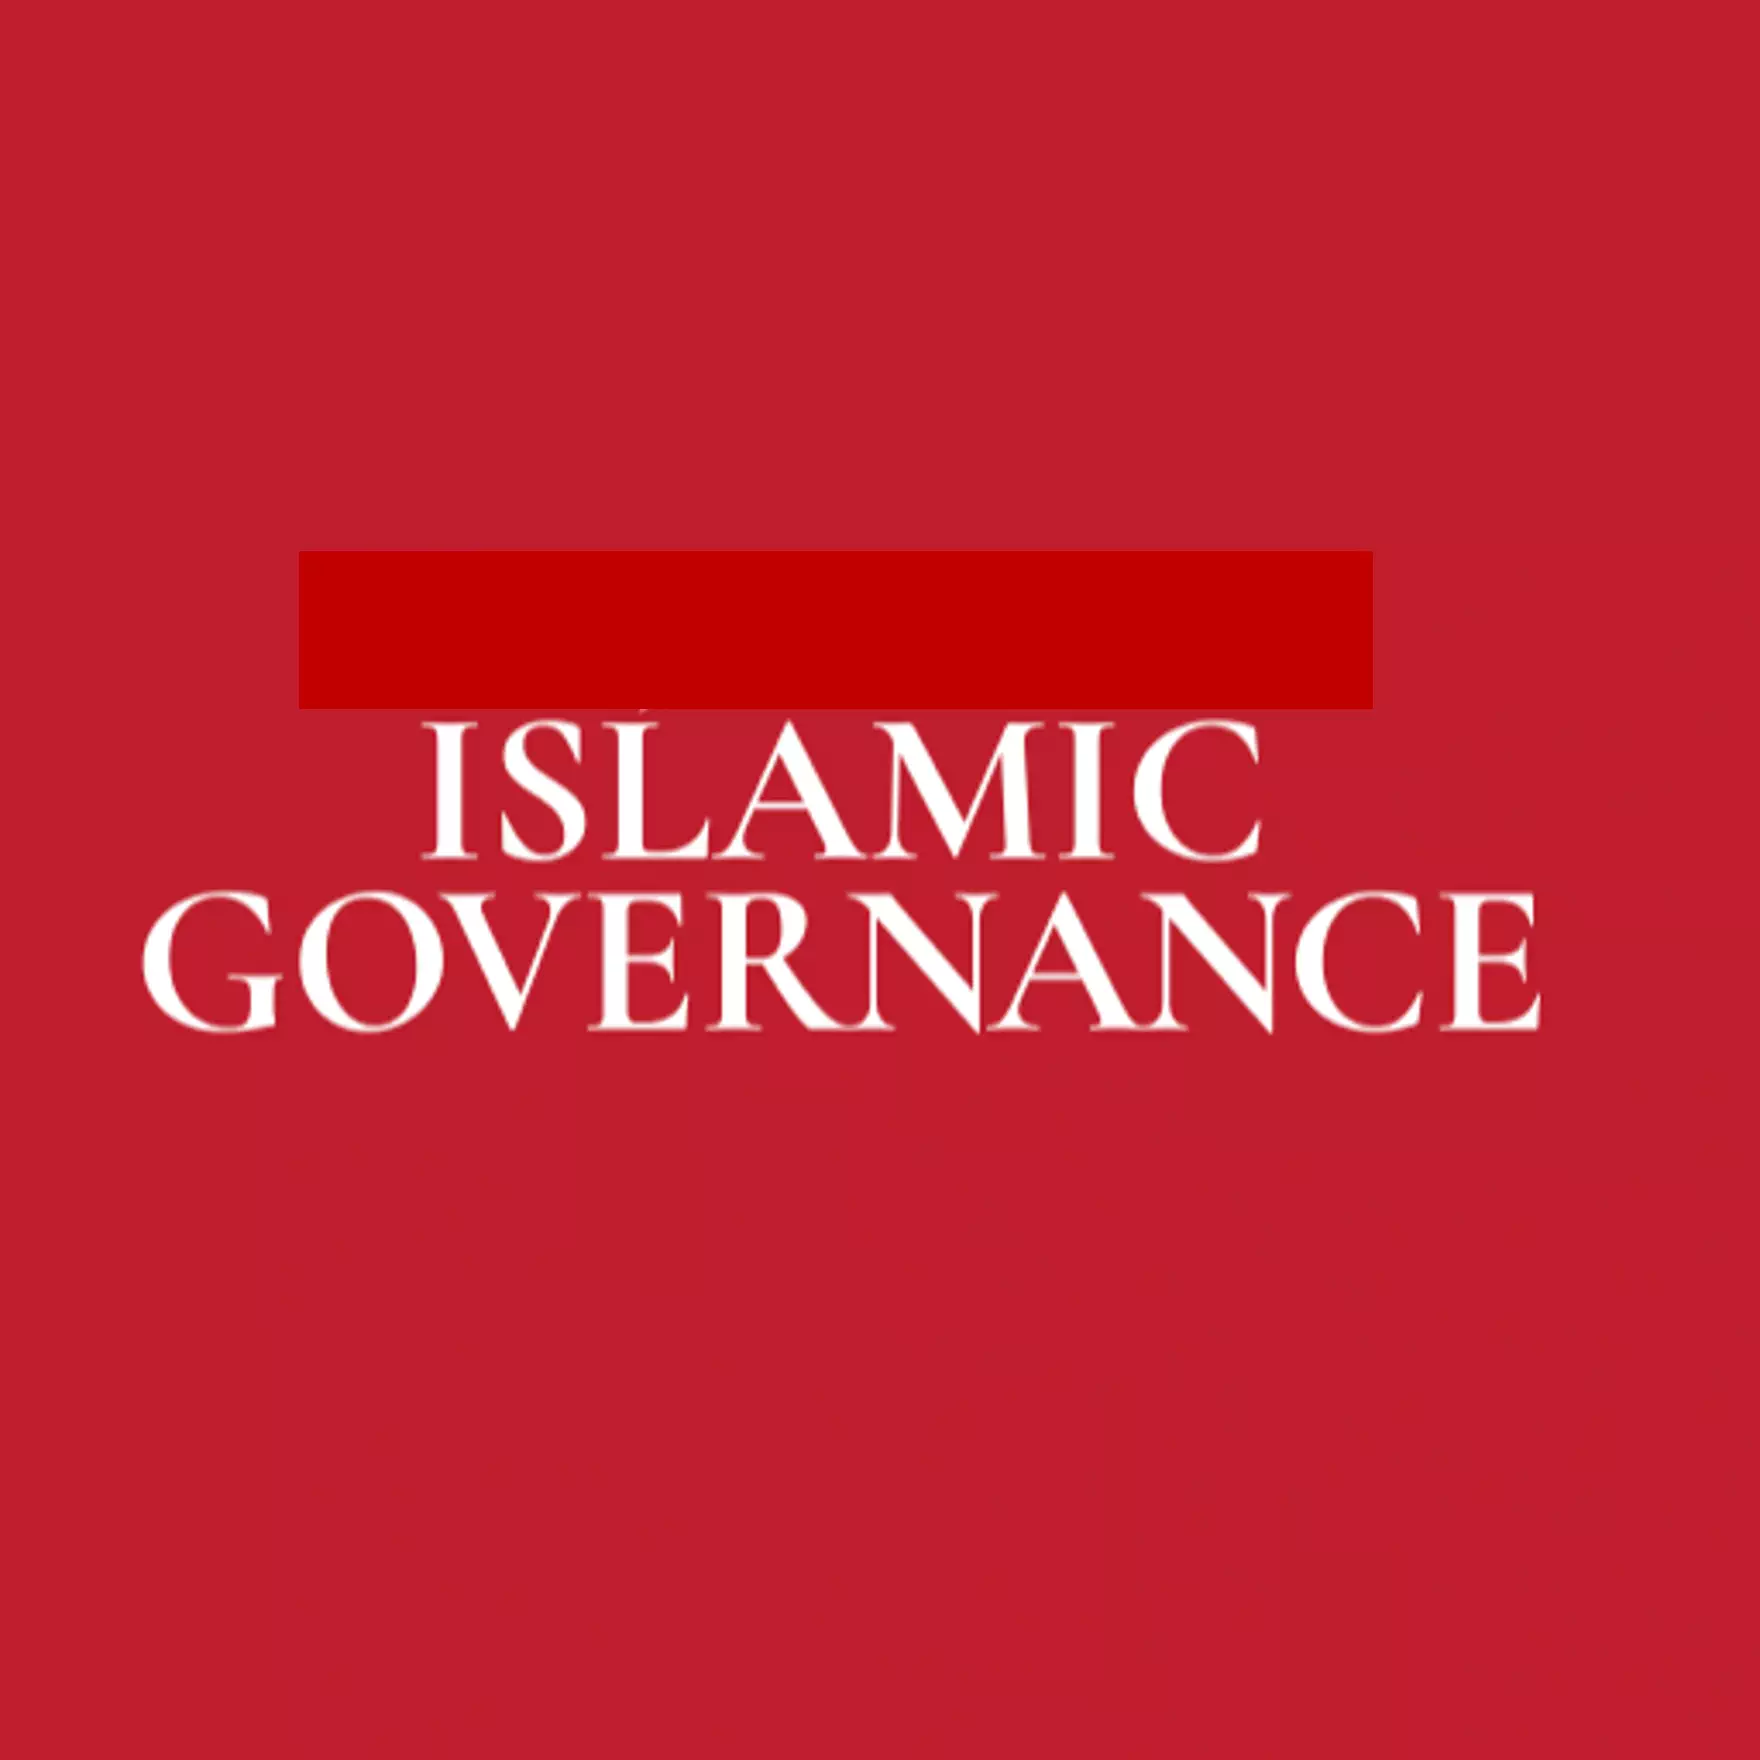 İslamic Governance - İslami Yönetişim, Hak ve Hürriyet Hareketi